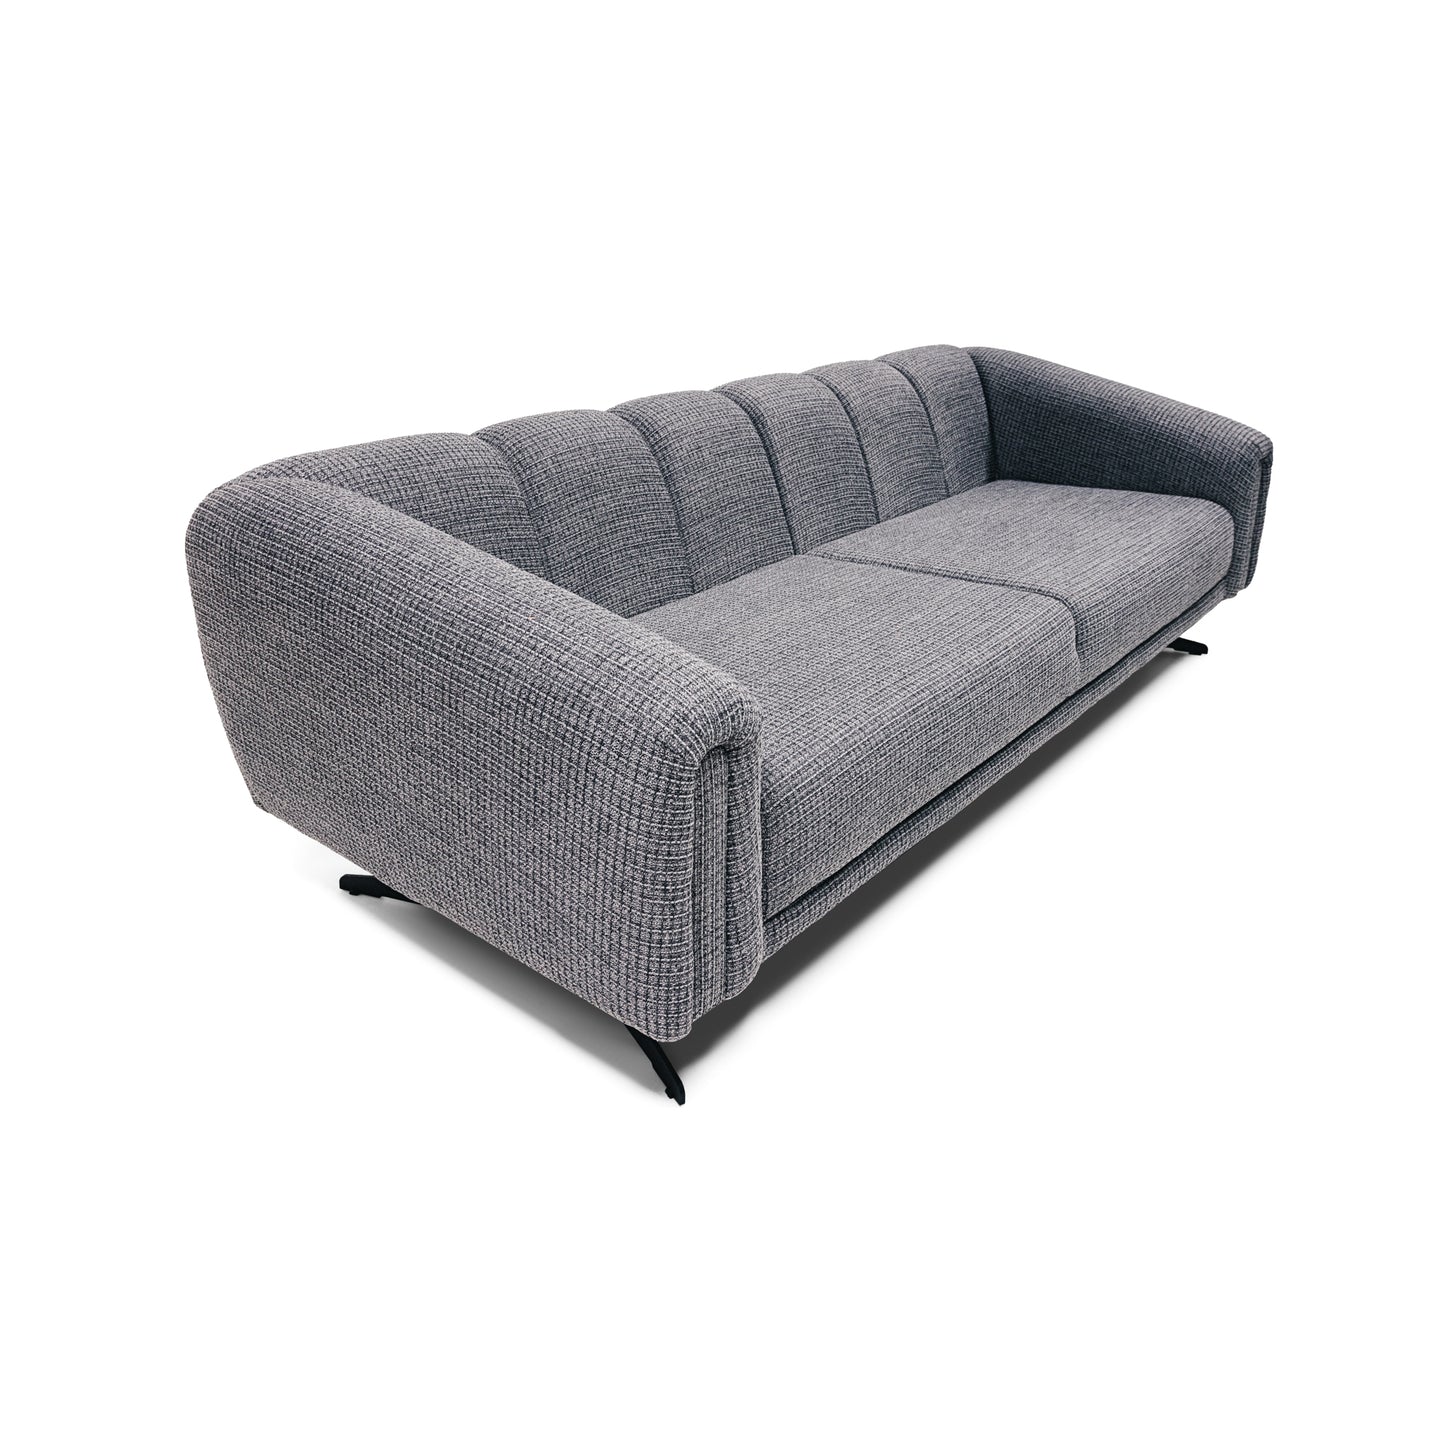 The Waverly Large Sofa